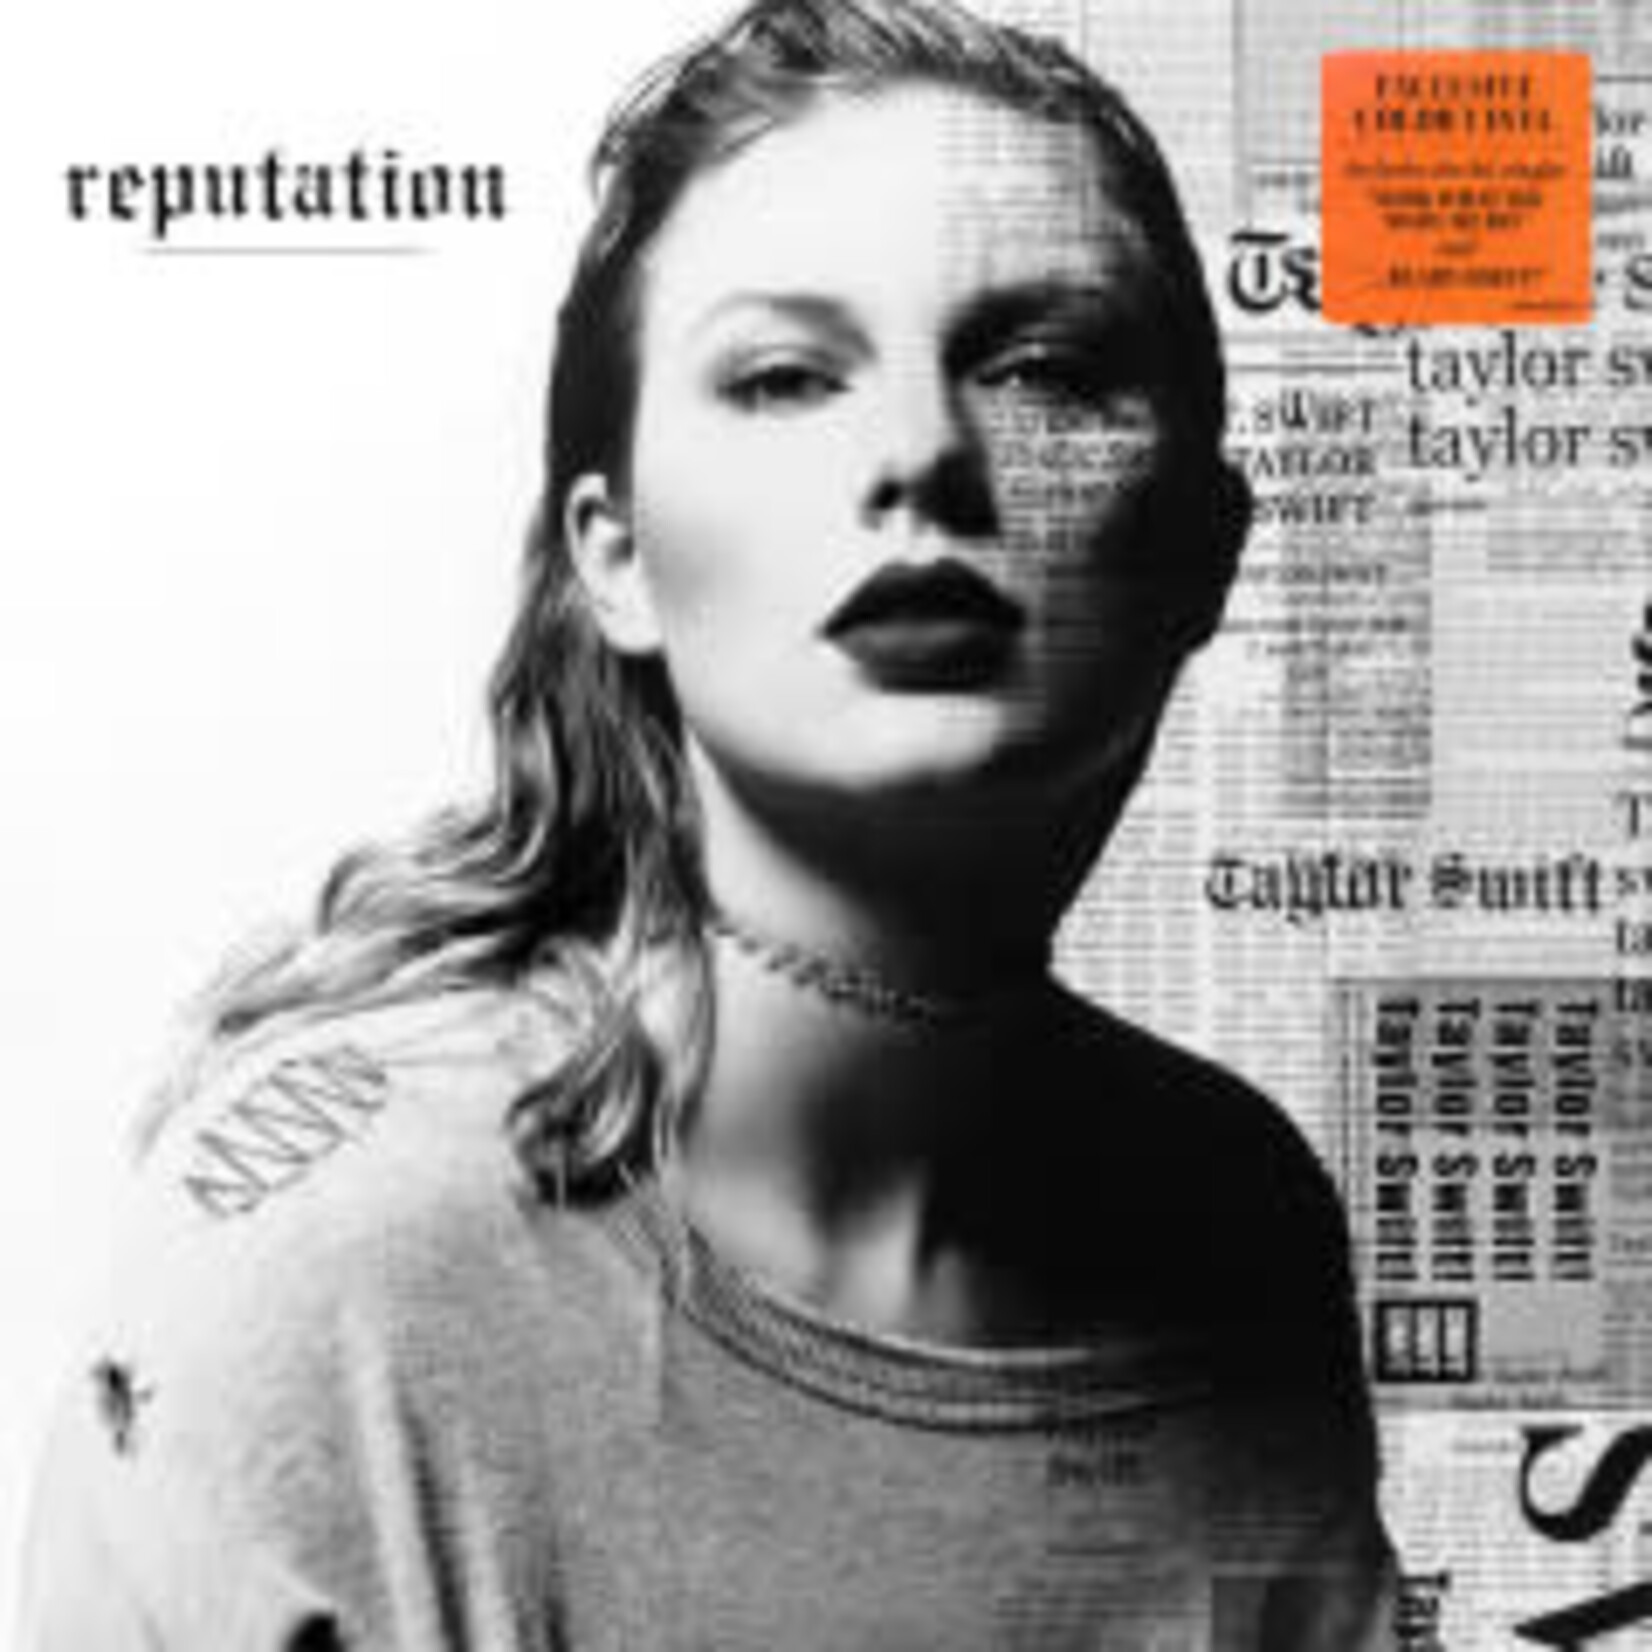 [Kollectibles] Swift, Taylor: Reputation (Ltd Ed Orange vinyl) [KOLLECTIBLES]